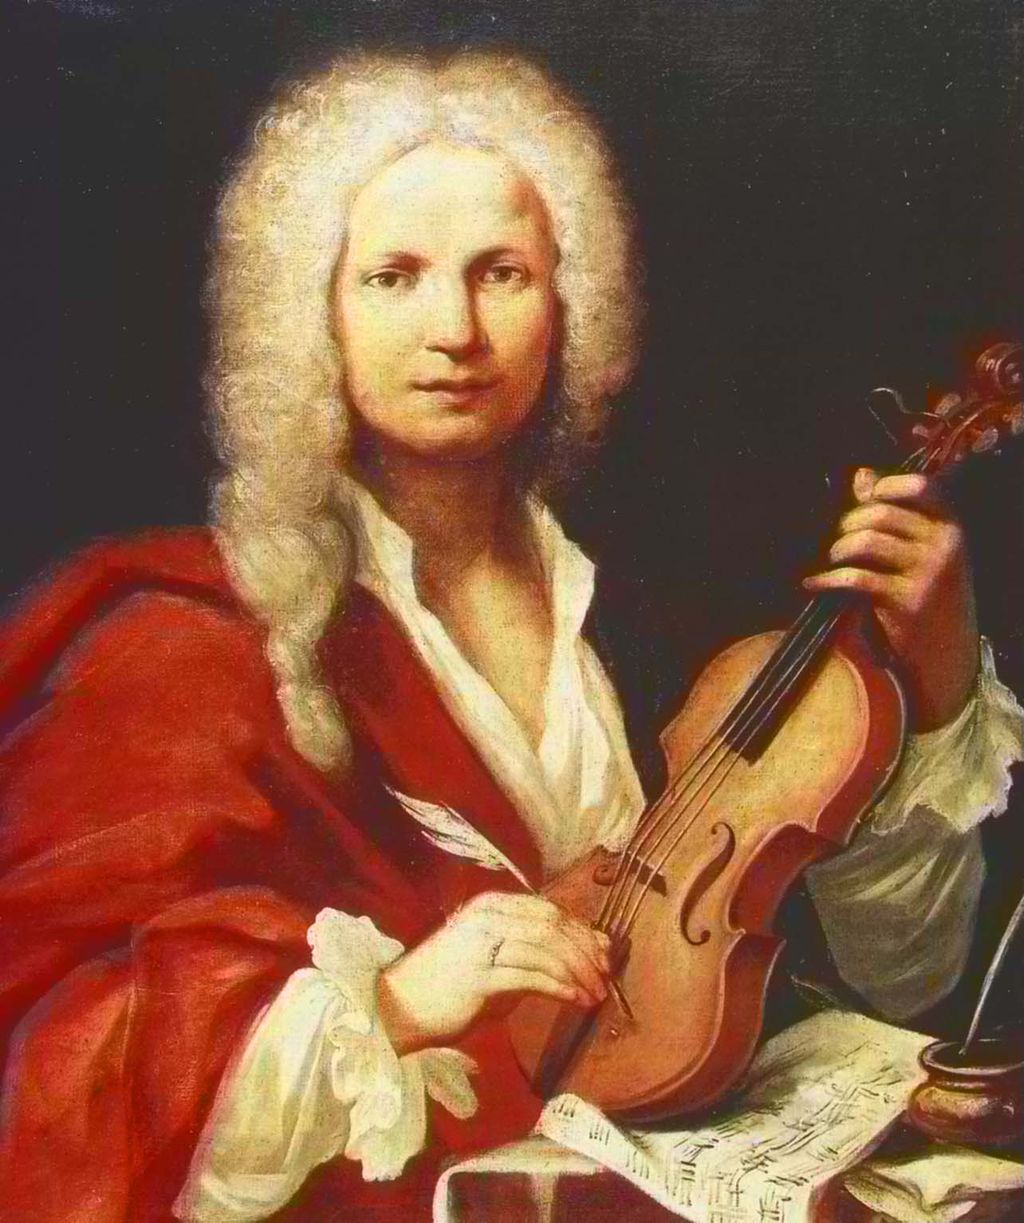 Figura 1.- Retrato de Antonio Vivaldi pintado por François de la Cave en 1723.